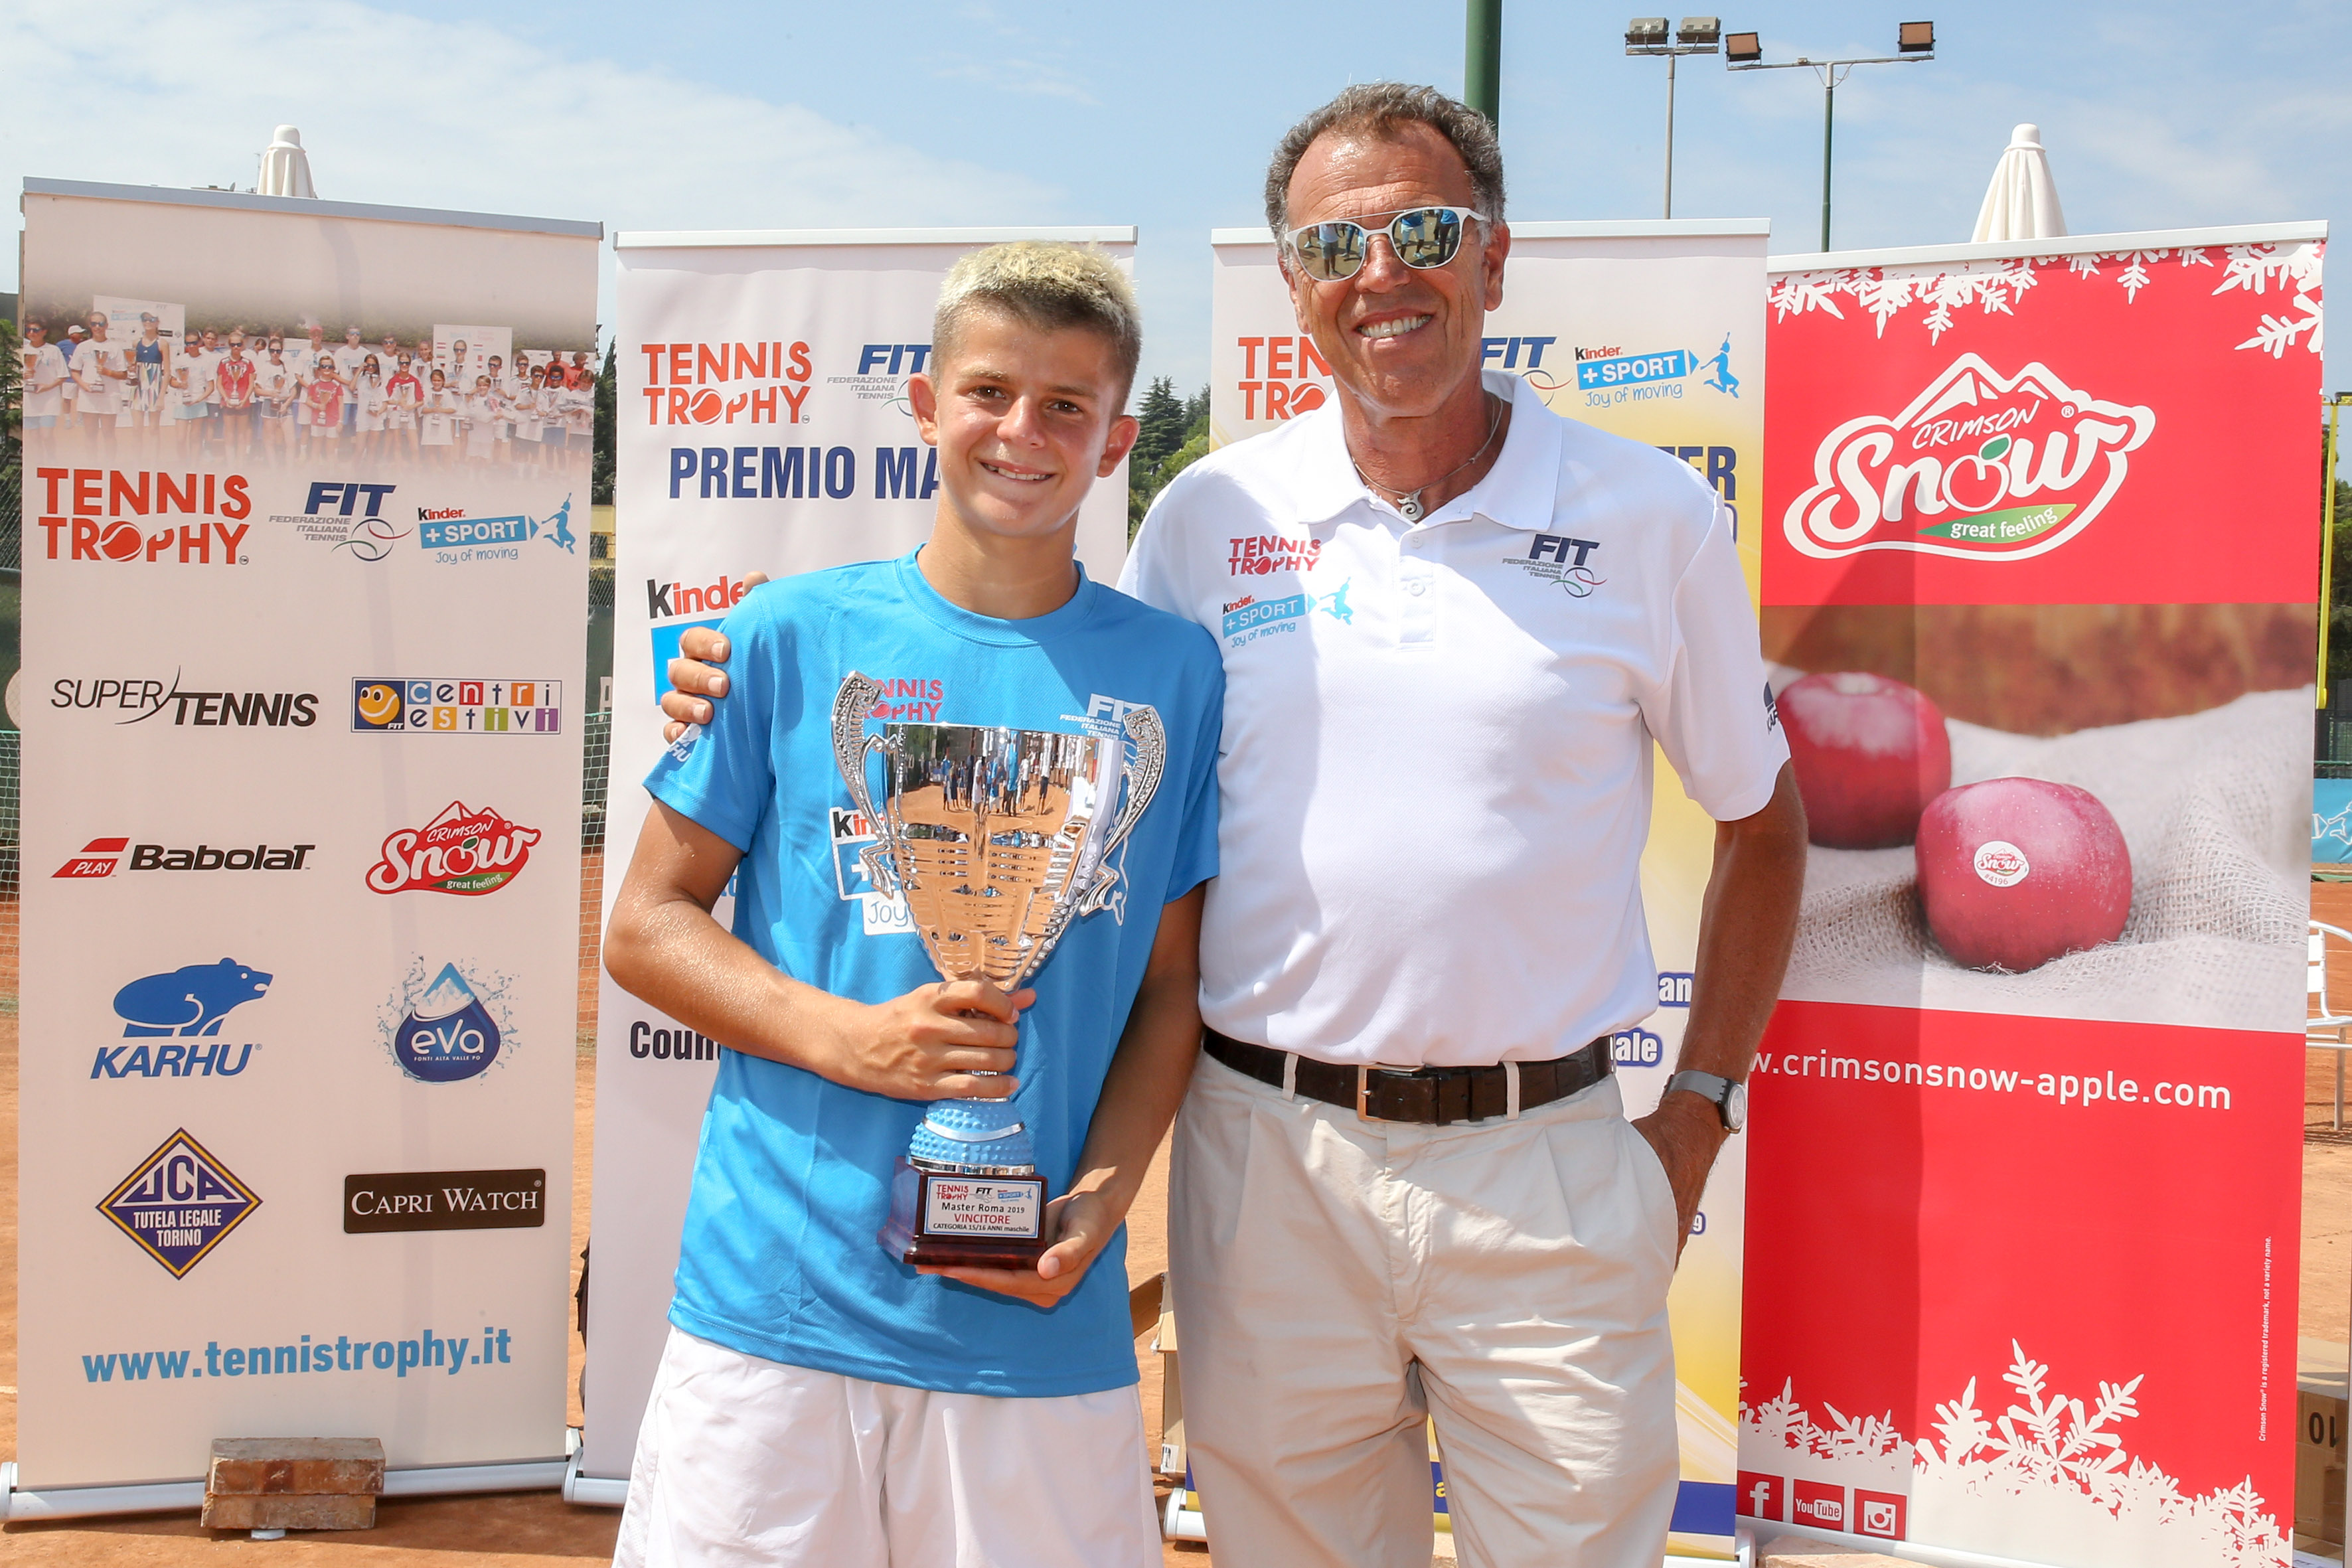 Master Tennis Trophy FIT Kinder + Sport 2019: i vincitori